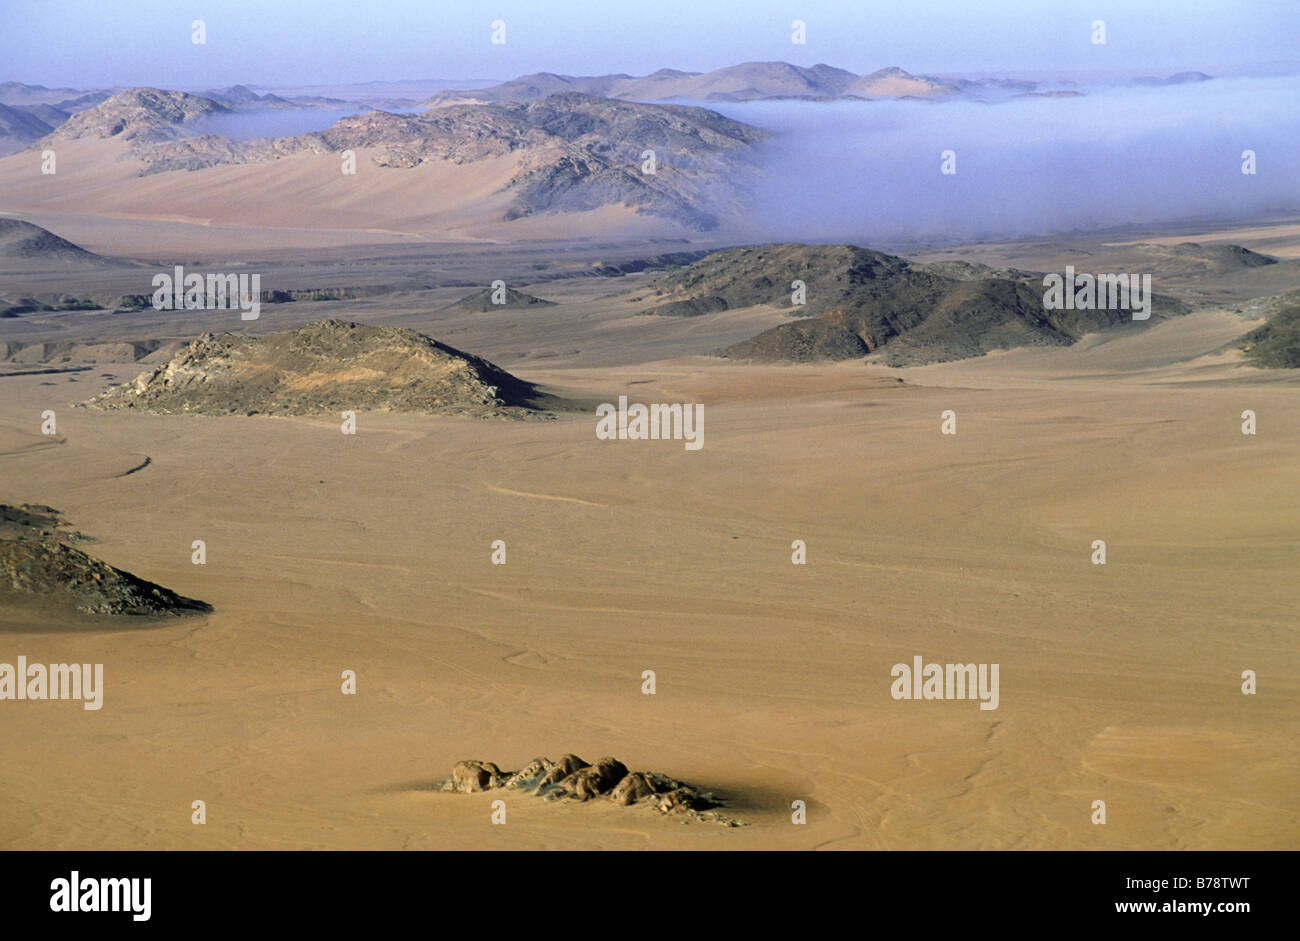 Di prima mattina nebbia costiera che penetrano nell'entroterra del deserto costiero la fornitura di umidità per le piante e gli insetti. Foto Stock